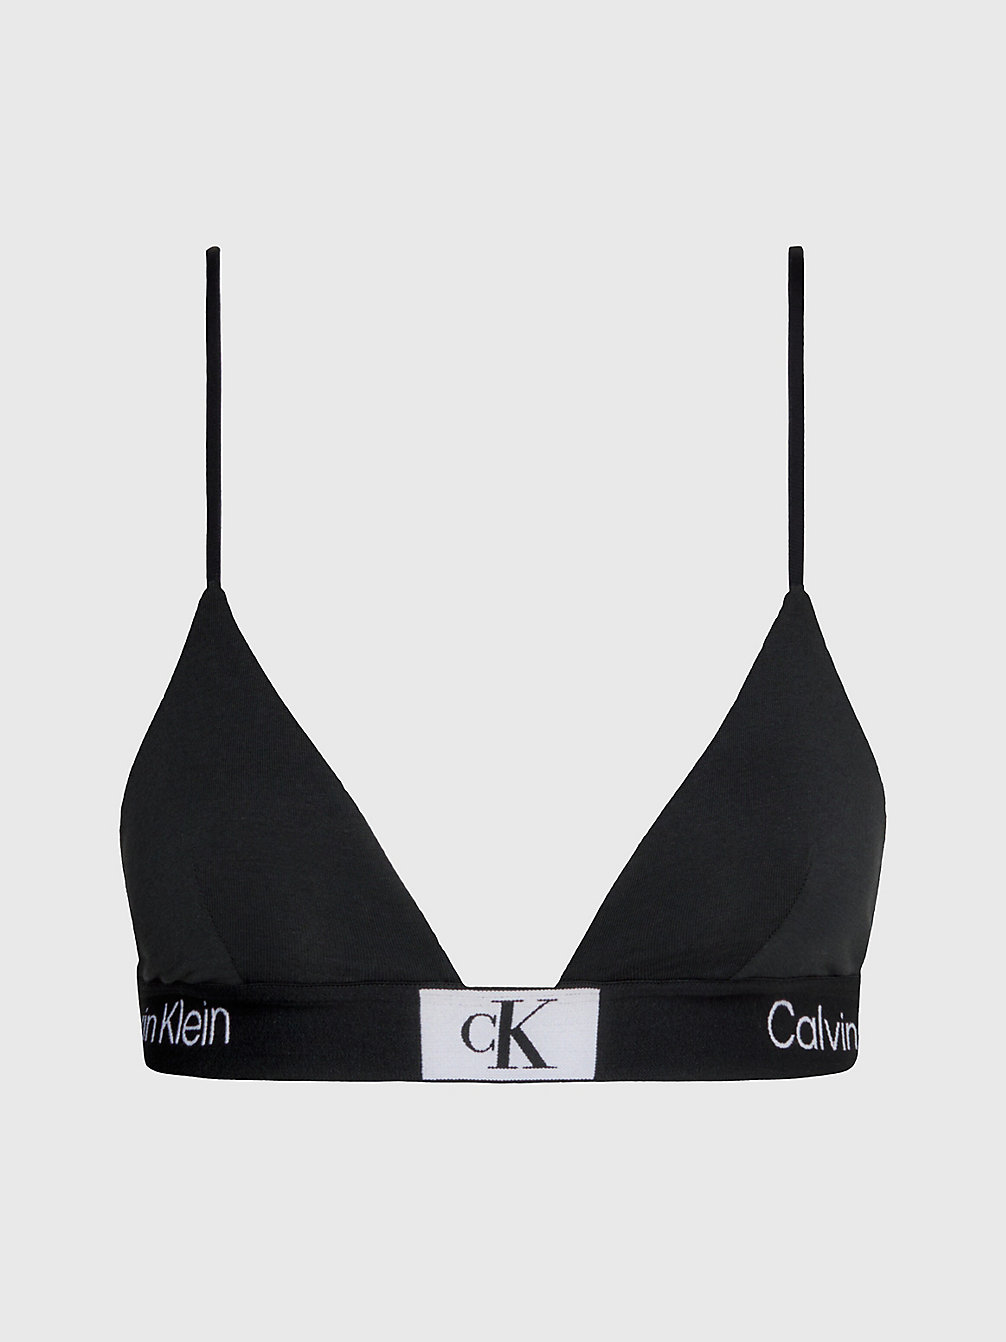 BLACK Triangle Bra - Ck96 undefined women Calvin Klein